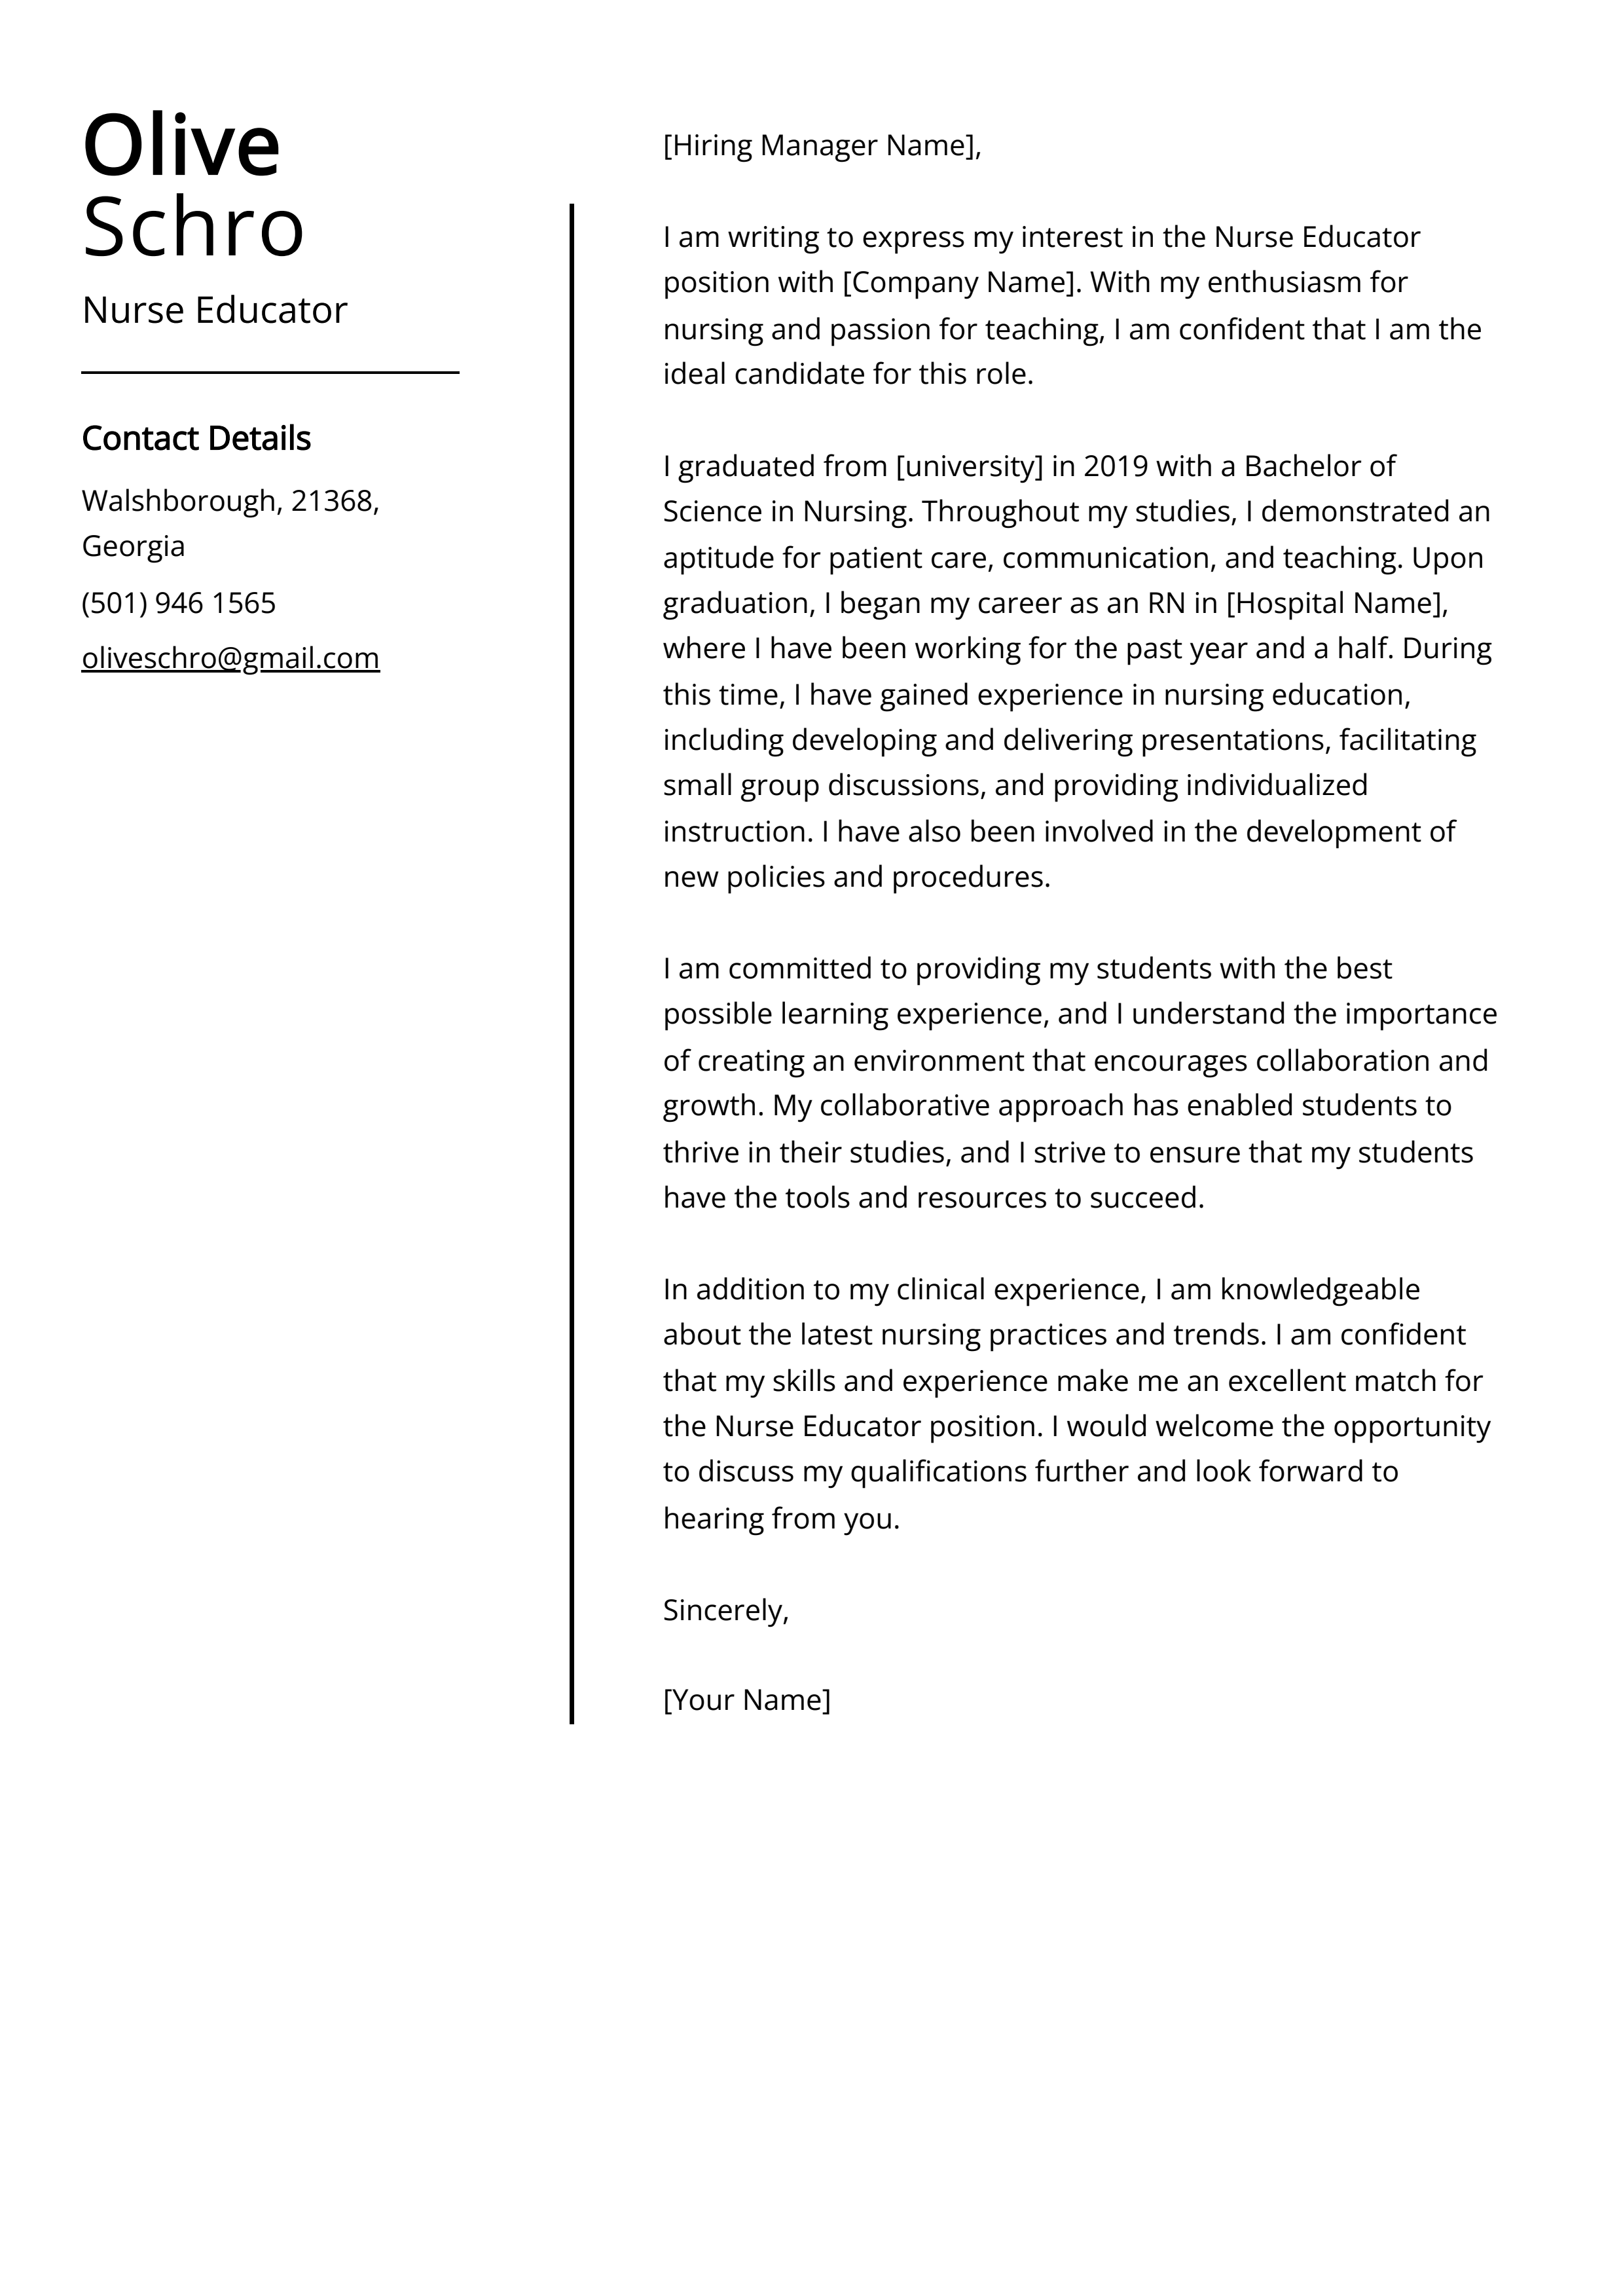 cover letter for nurse educator job